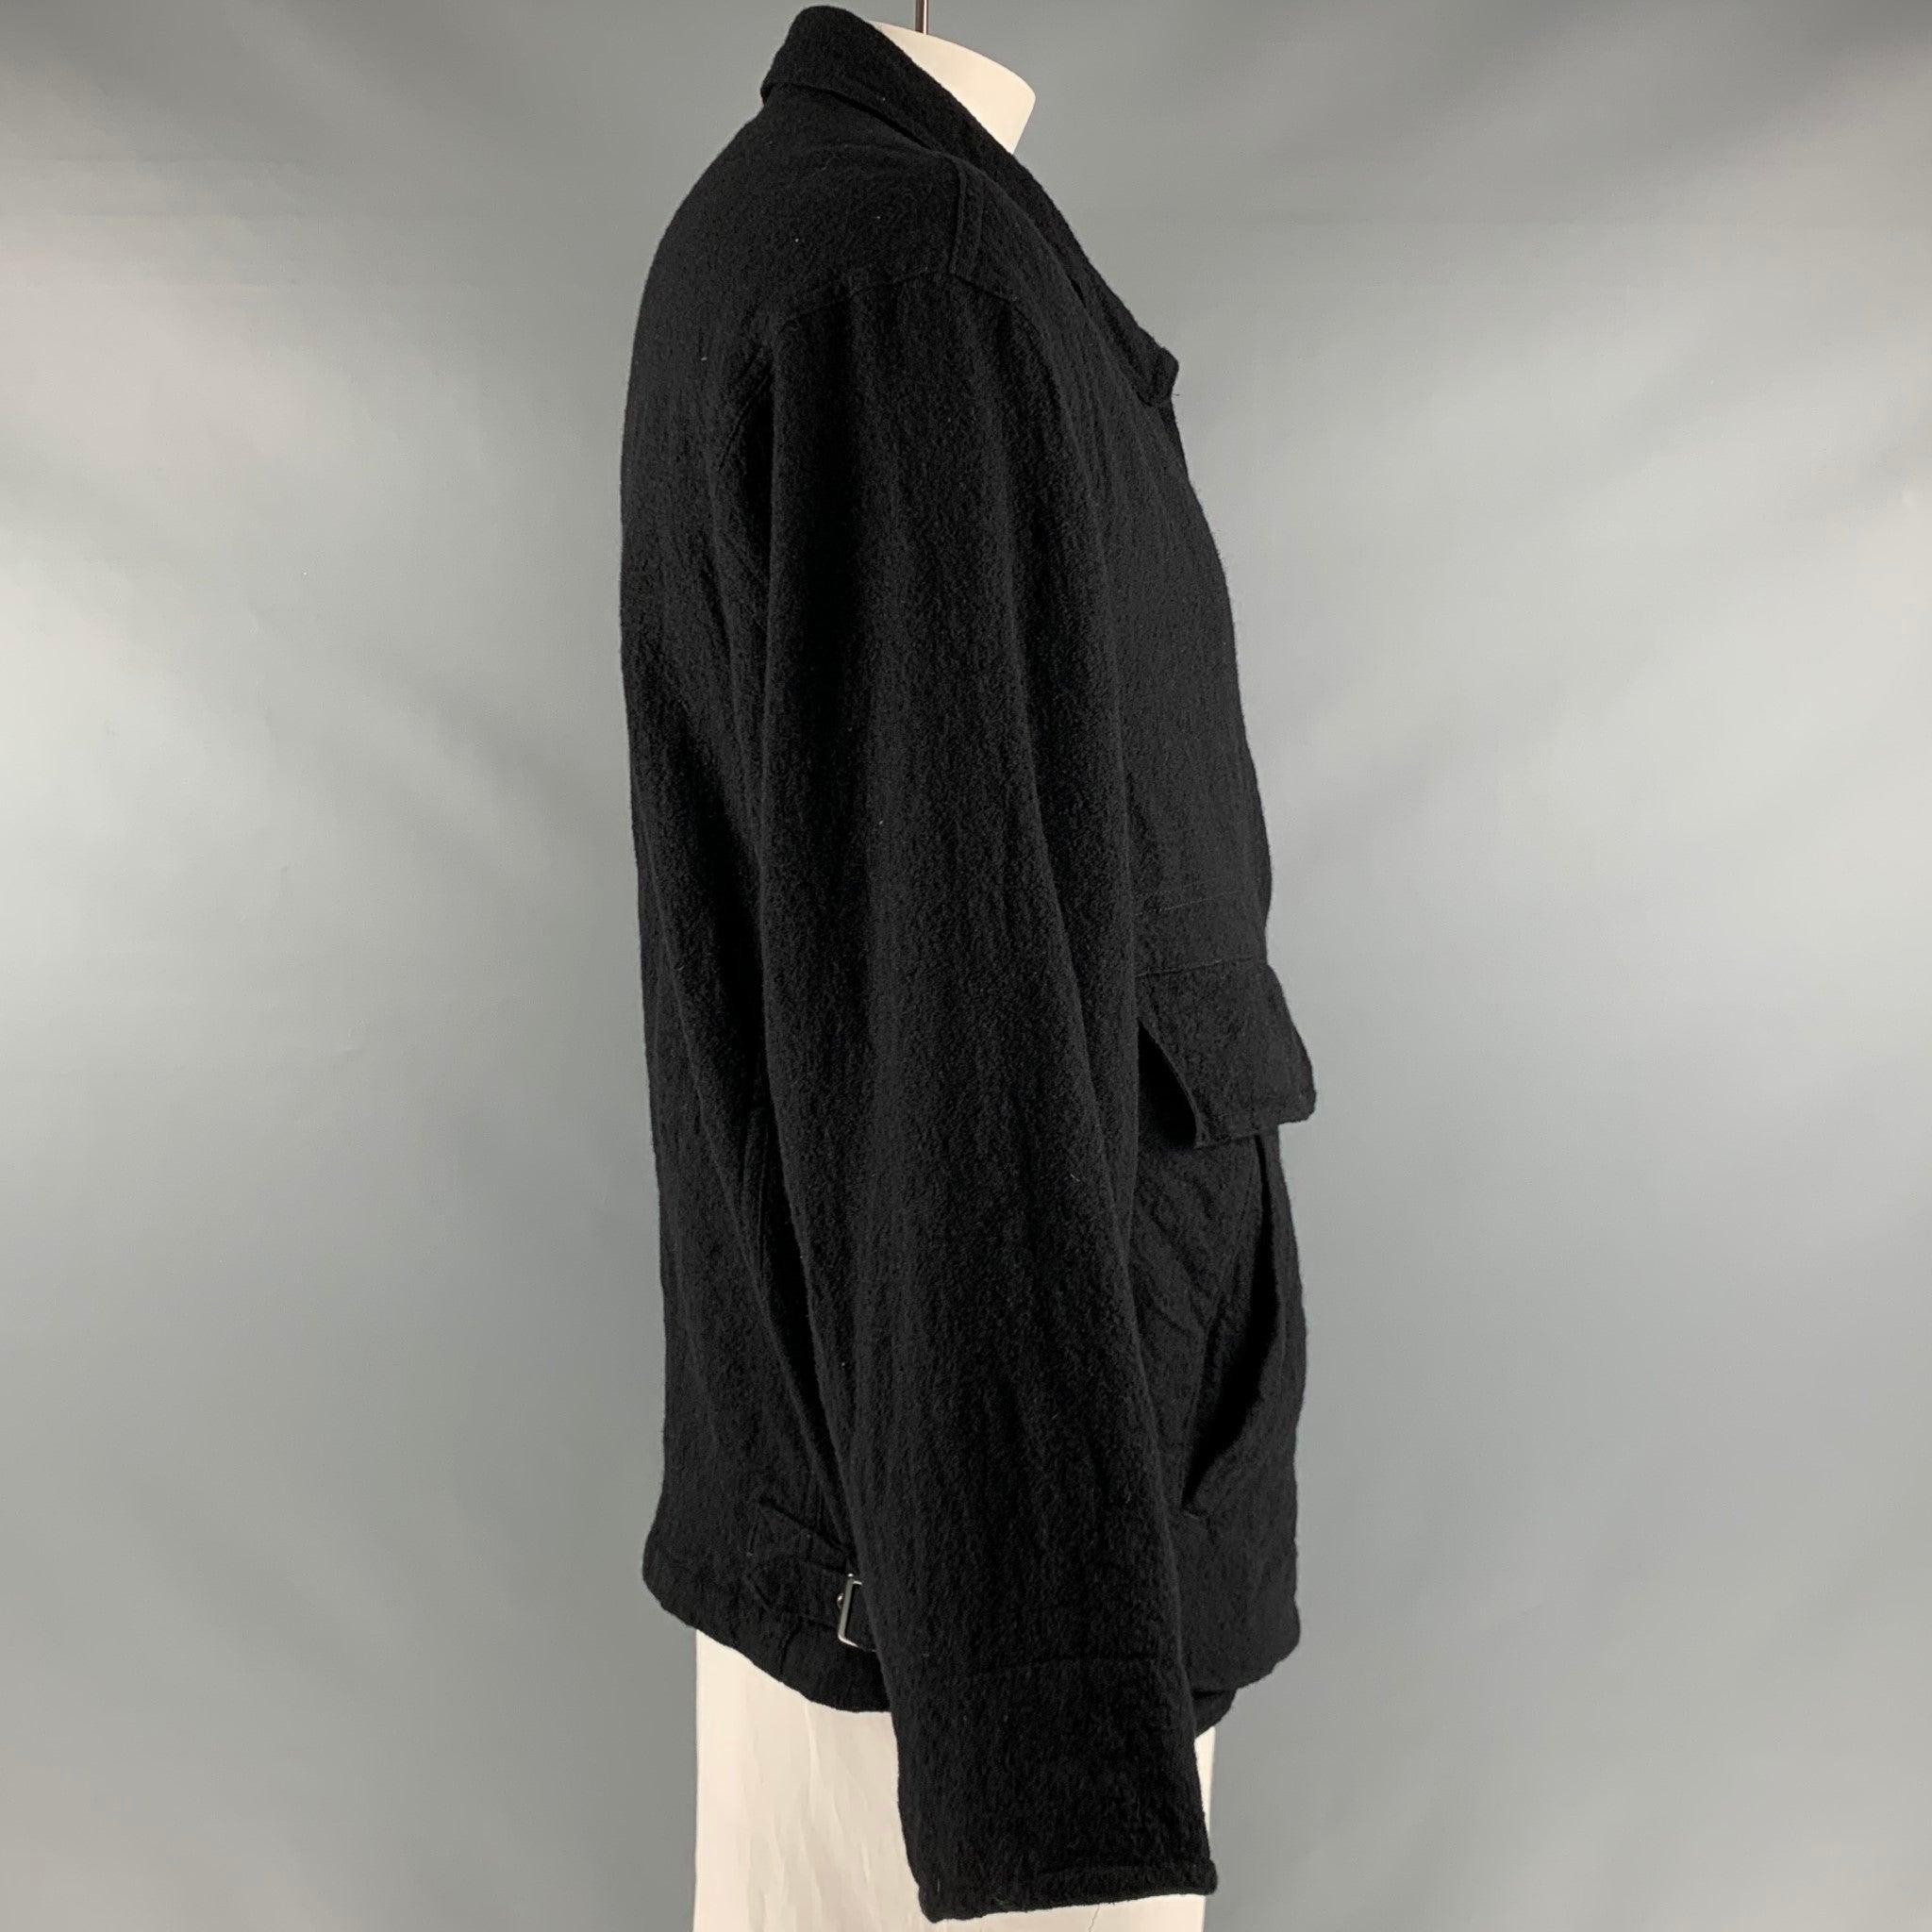 YOHJI YAMAMOTO PRODUZIEREN
Jacke aus schwarzem Wollstoff mit vier Taschen und einem Reißverschluss. Hergestellt in Japan. Guter Pre-Owned Zustand. Mäßige Gebrauchsspuren. 

Markiert:   3 

Abmessungen: 
 
Schulter: 20 Zoll  Brustkorb: 42 Zoll 